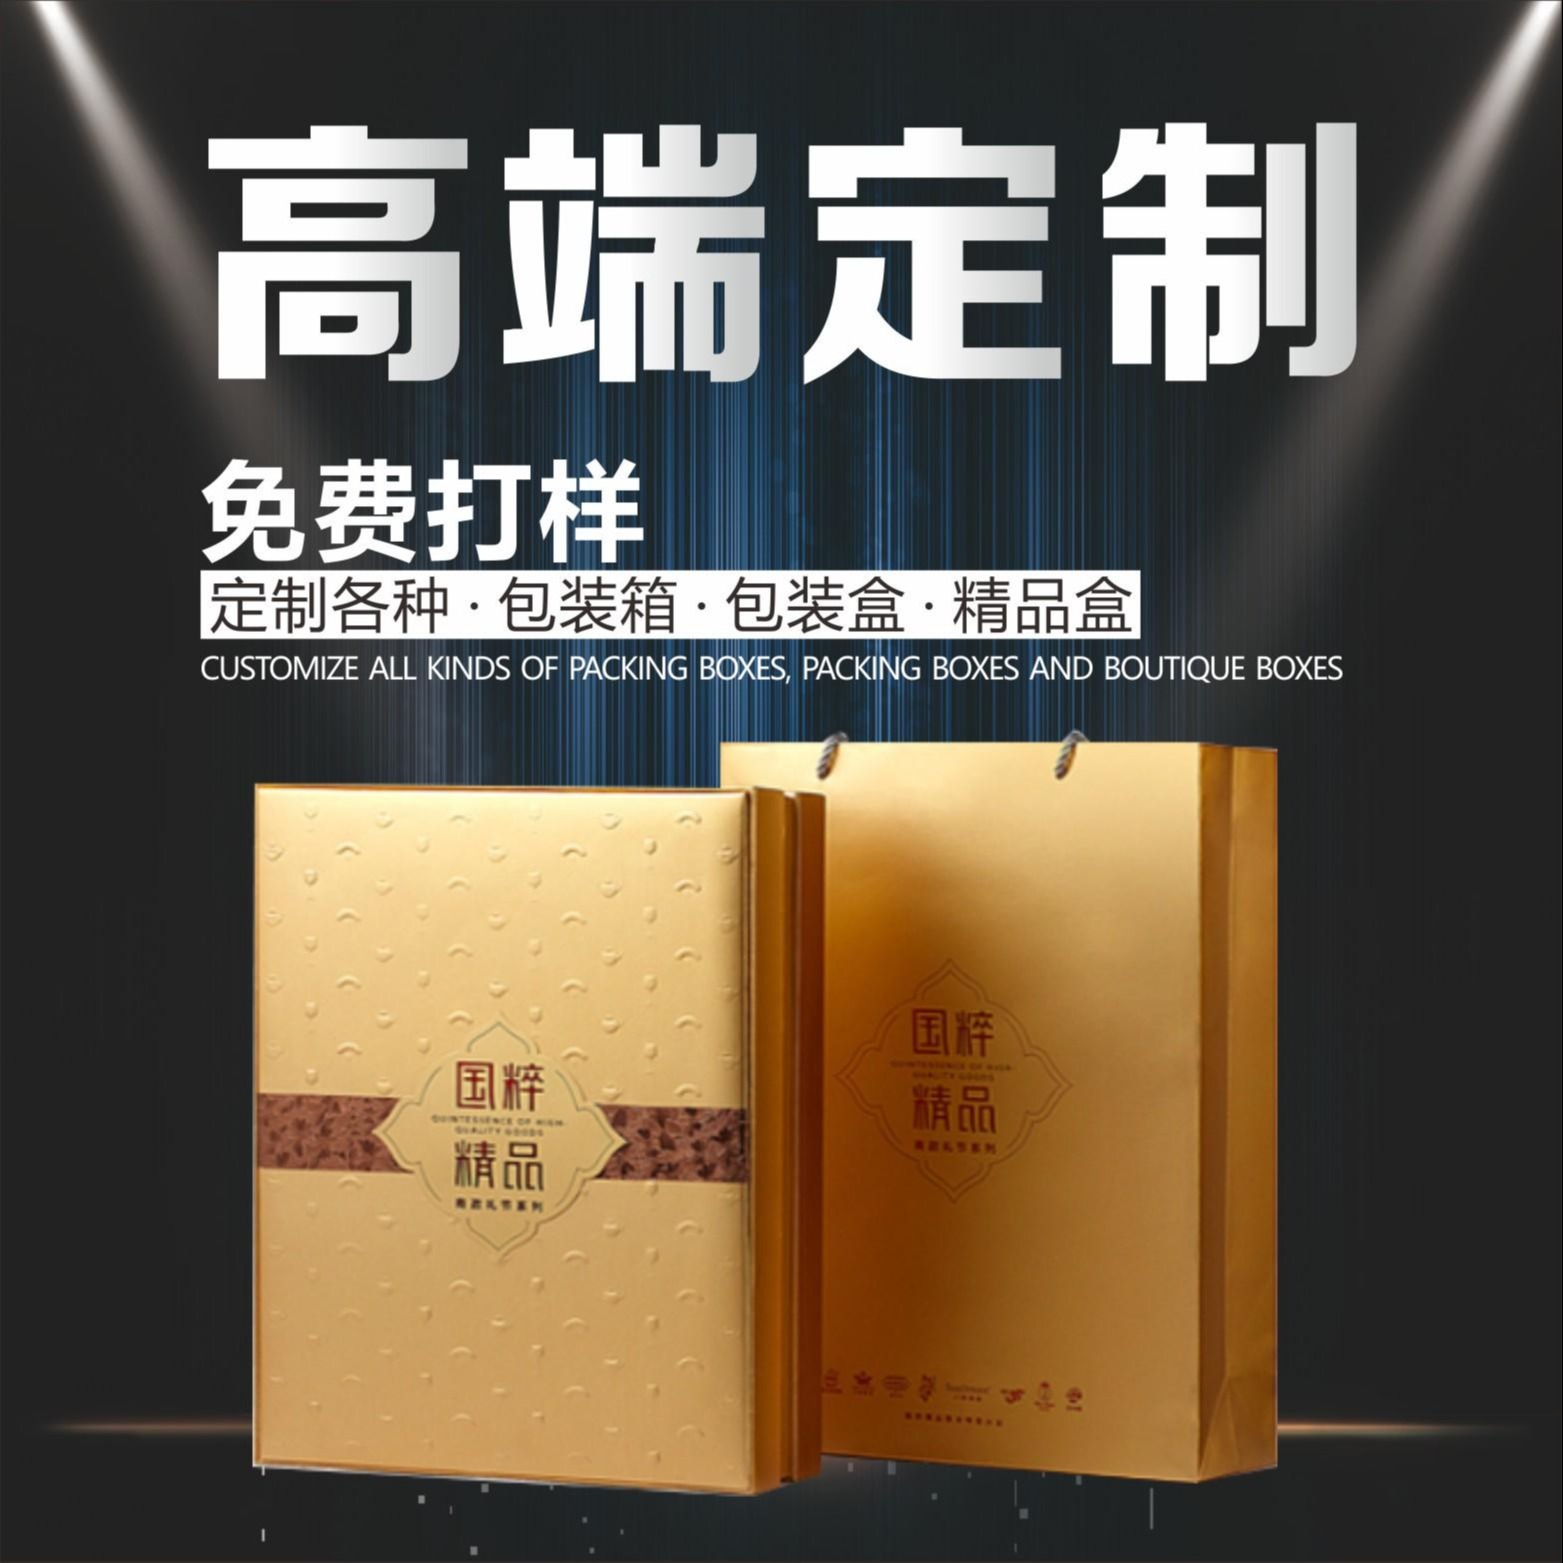 厂家定做书型盒 高端包装盒 红酒礼盒厂家 产品包装盒 武汉新坐标包装 礼品盒厂家